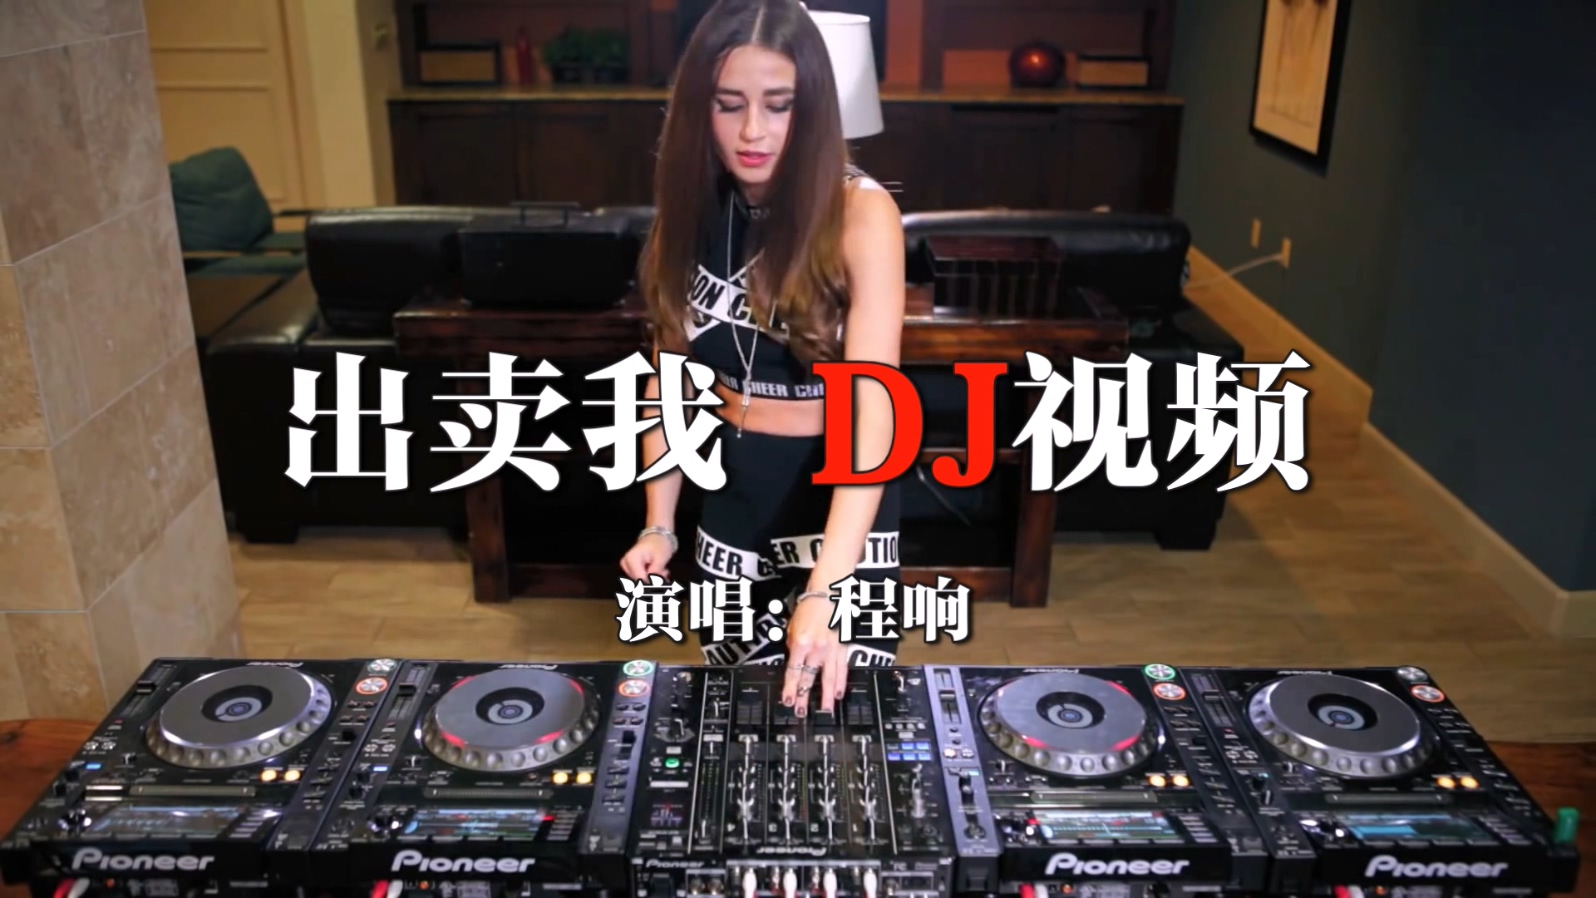 美女DJ打碟DJ视频中文舞曲